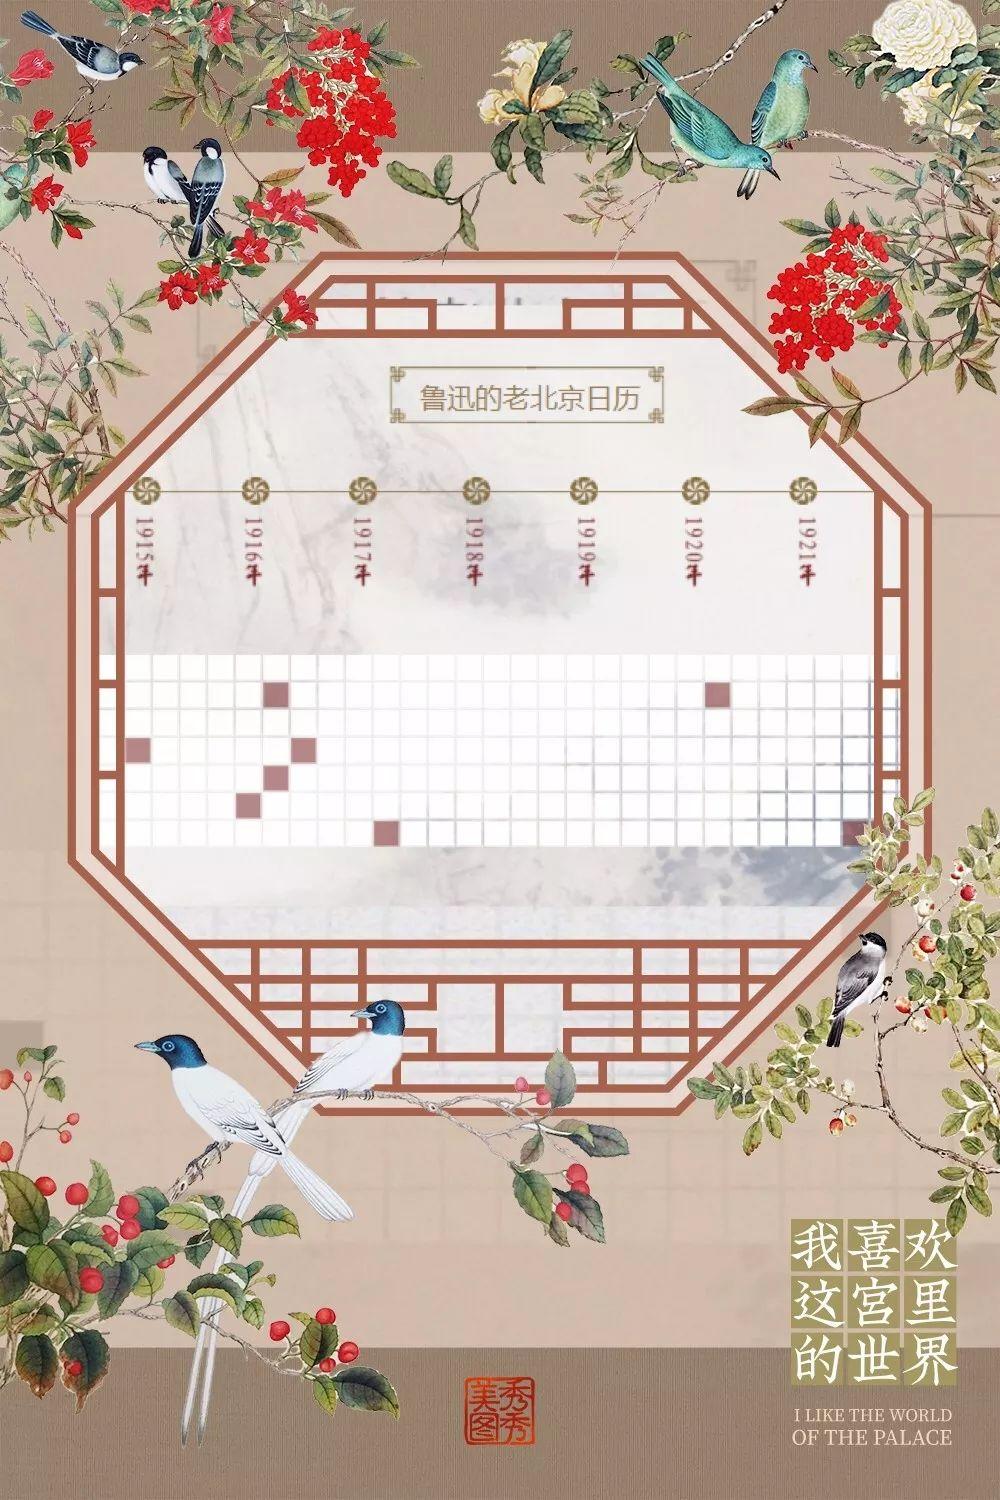 创新大赛|鲁迅的“北京餐桌” ——北京城市记忆数字资源展示平台